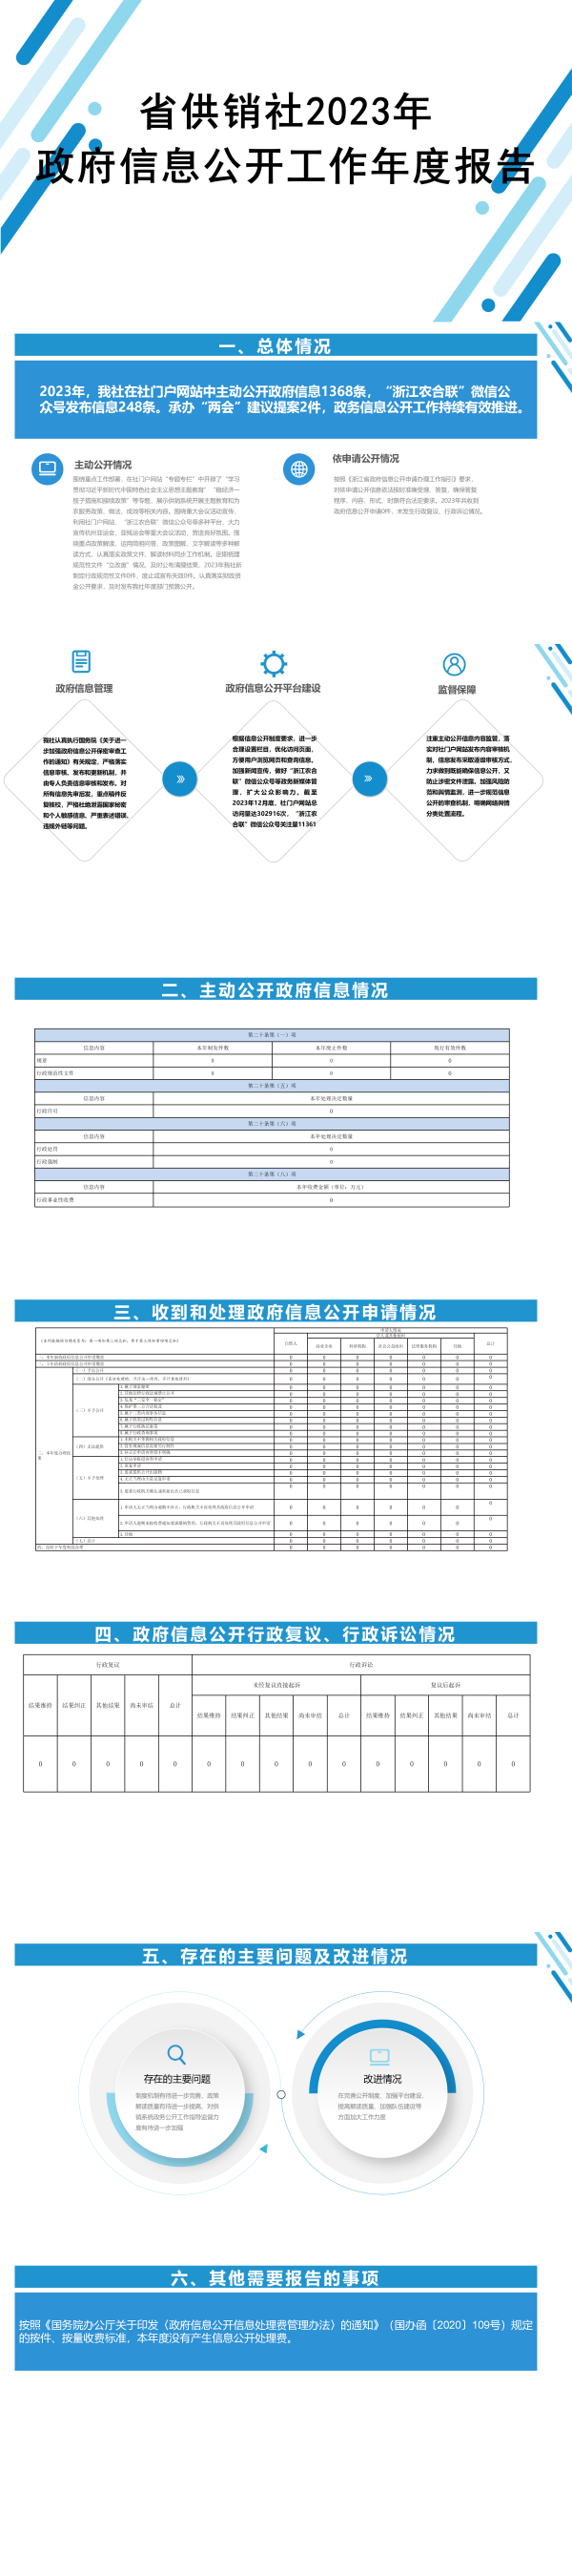 省供销社2023年政府信息公开工作年度报告图解_01.png